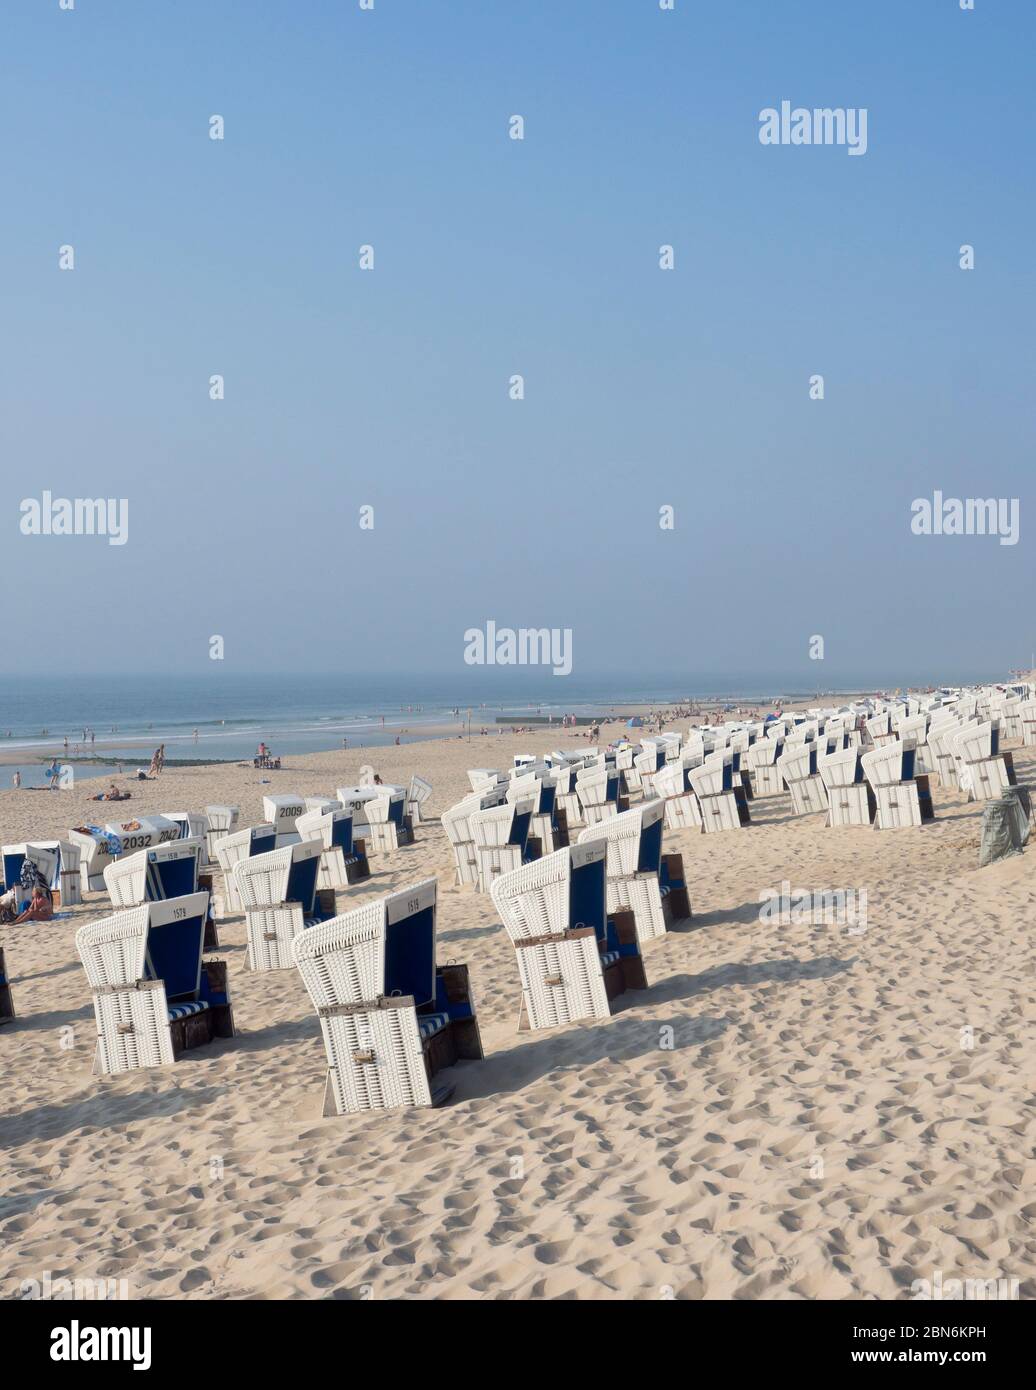 Strandkorb las sillas de playa alemanas, los turistas y el horizonte lejano a lo largo de los kilómetros de playa en Westerland Sylt, en Schleswig-Holstein Alemania Foto de stock